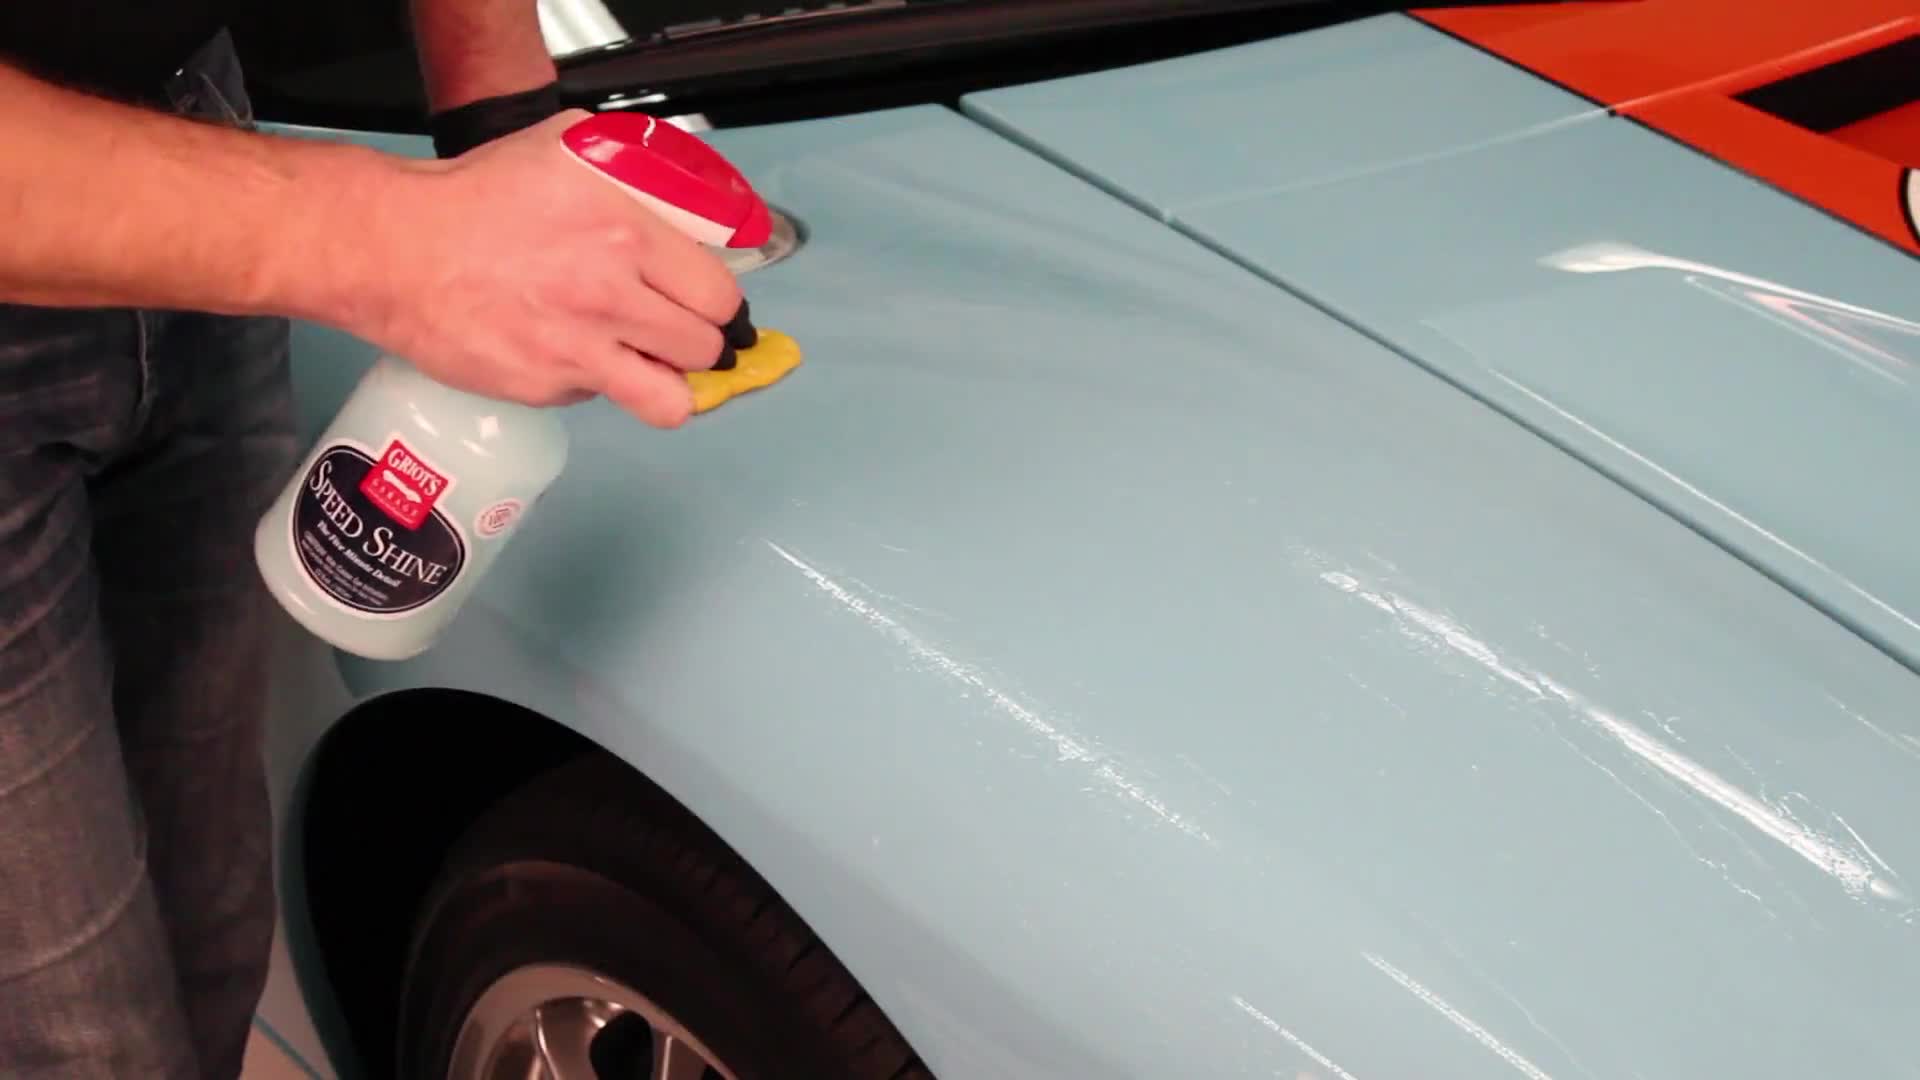 Speed Shine®  Auto Detailing Spray - Griot's Garage